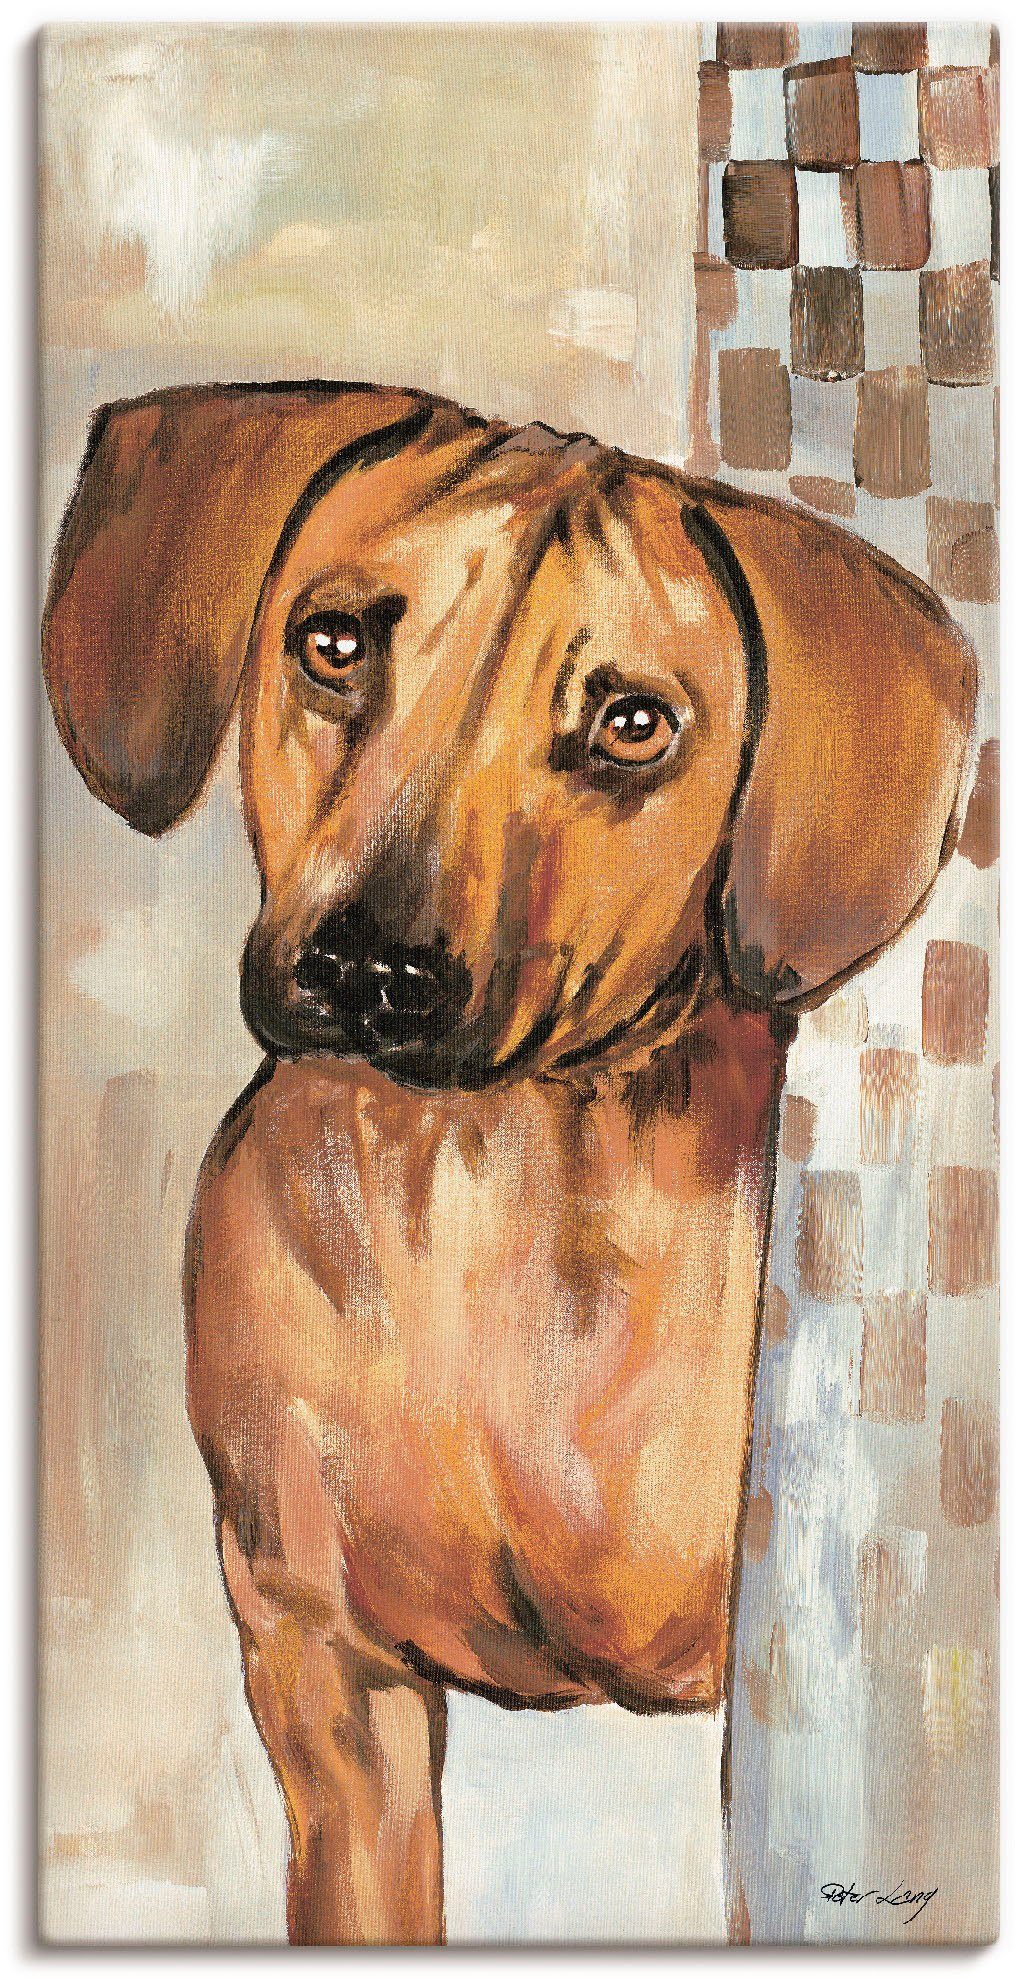 Artland Artprint Hond in vele afmetingen & productsoorten - artprint van aluminium / artprint voor buiten, artprint op linnen, poster, muursticker / wandfolie ook geschikt voor de